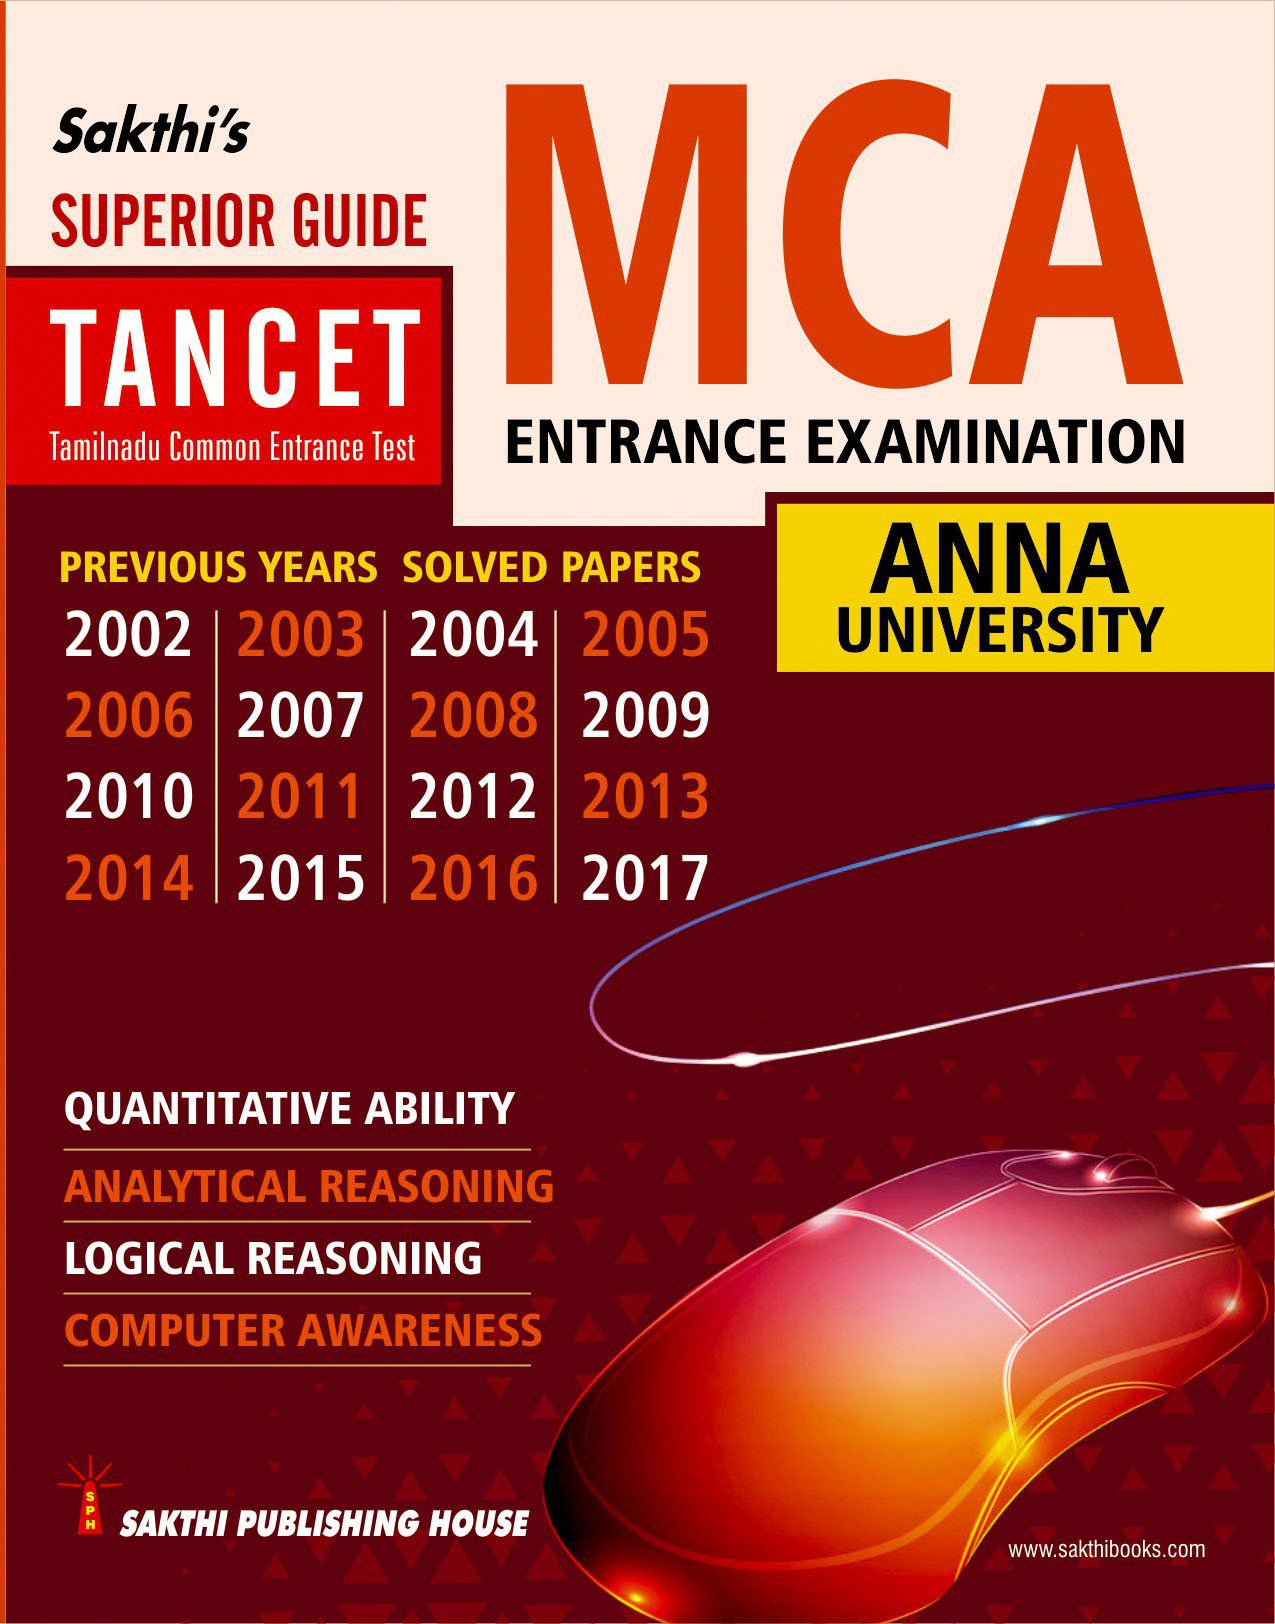 NCP-MCA Online Tests